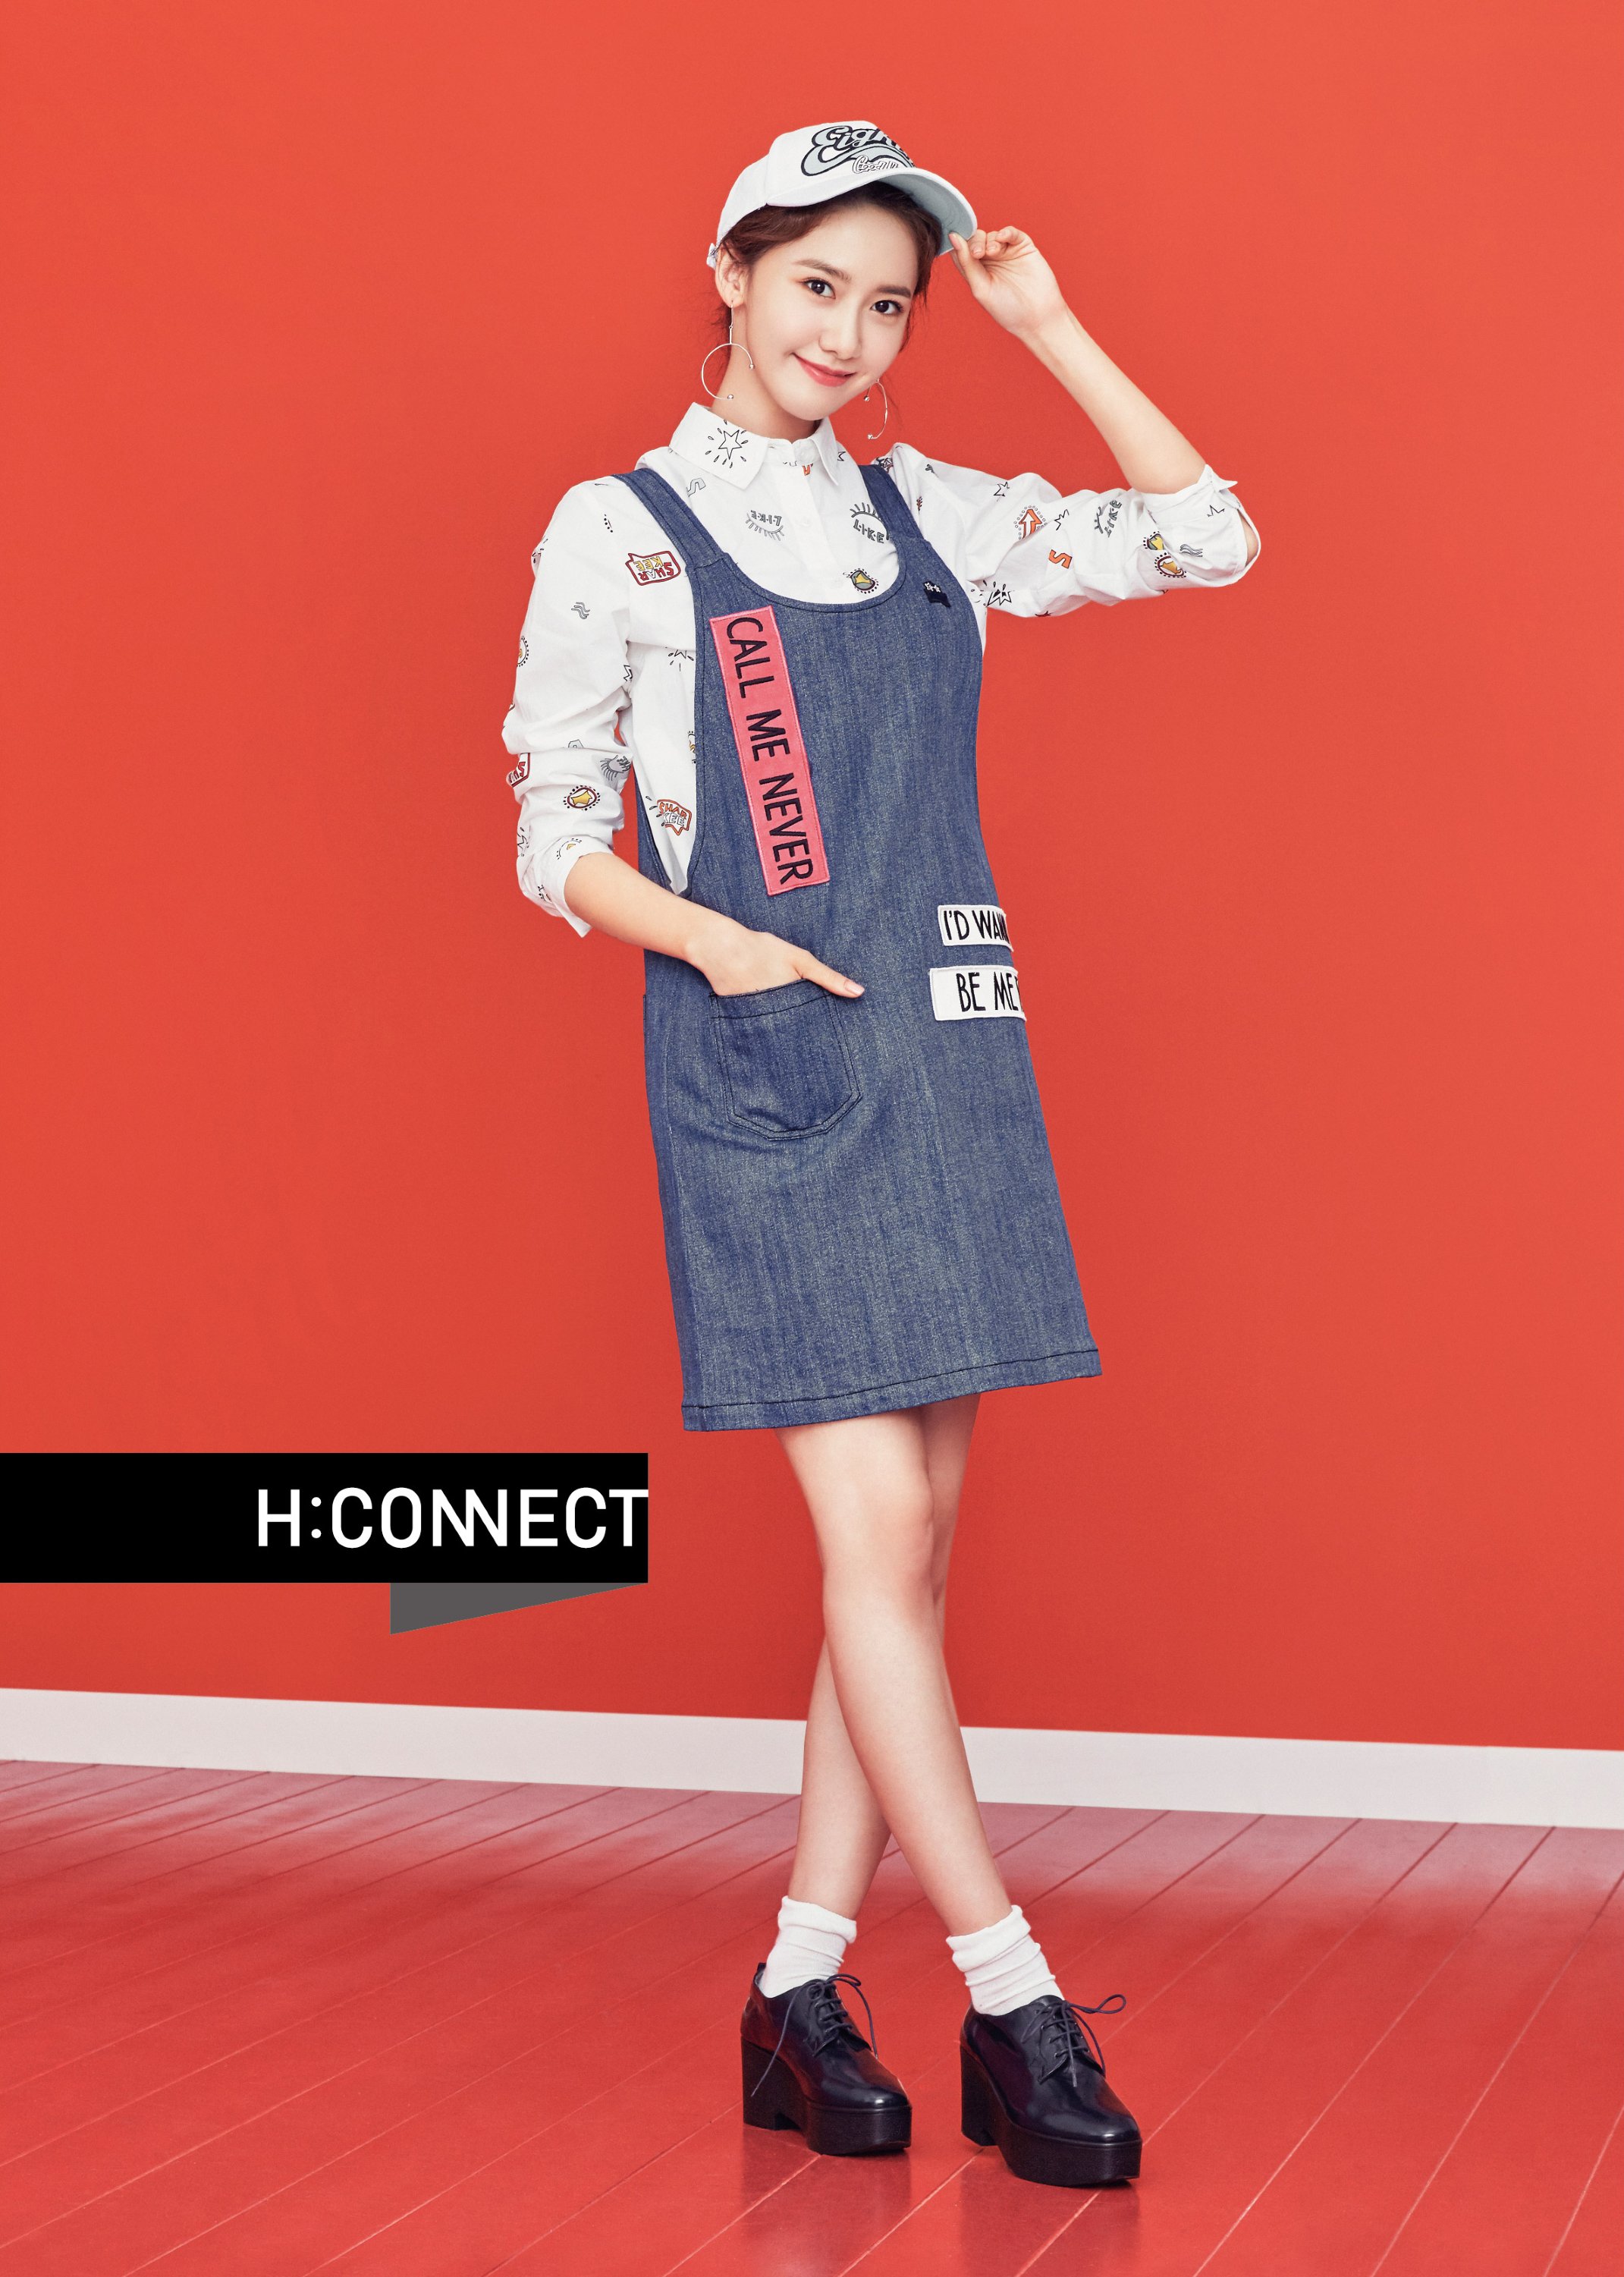 [OTHER][27-07-2015]YoonA trở thành người mẫu mới cho dòng thời trang "H:CONNECT" - Page 7 9RS74xN4dh-3000x3000